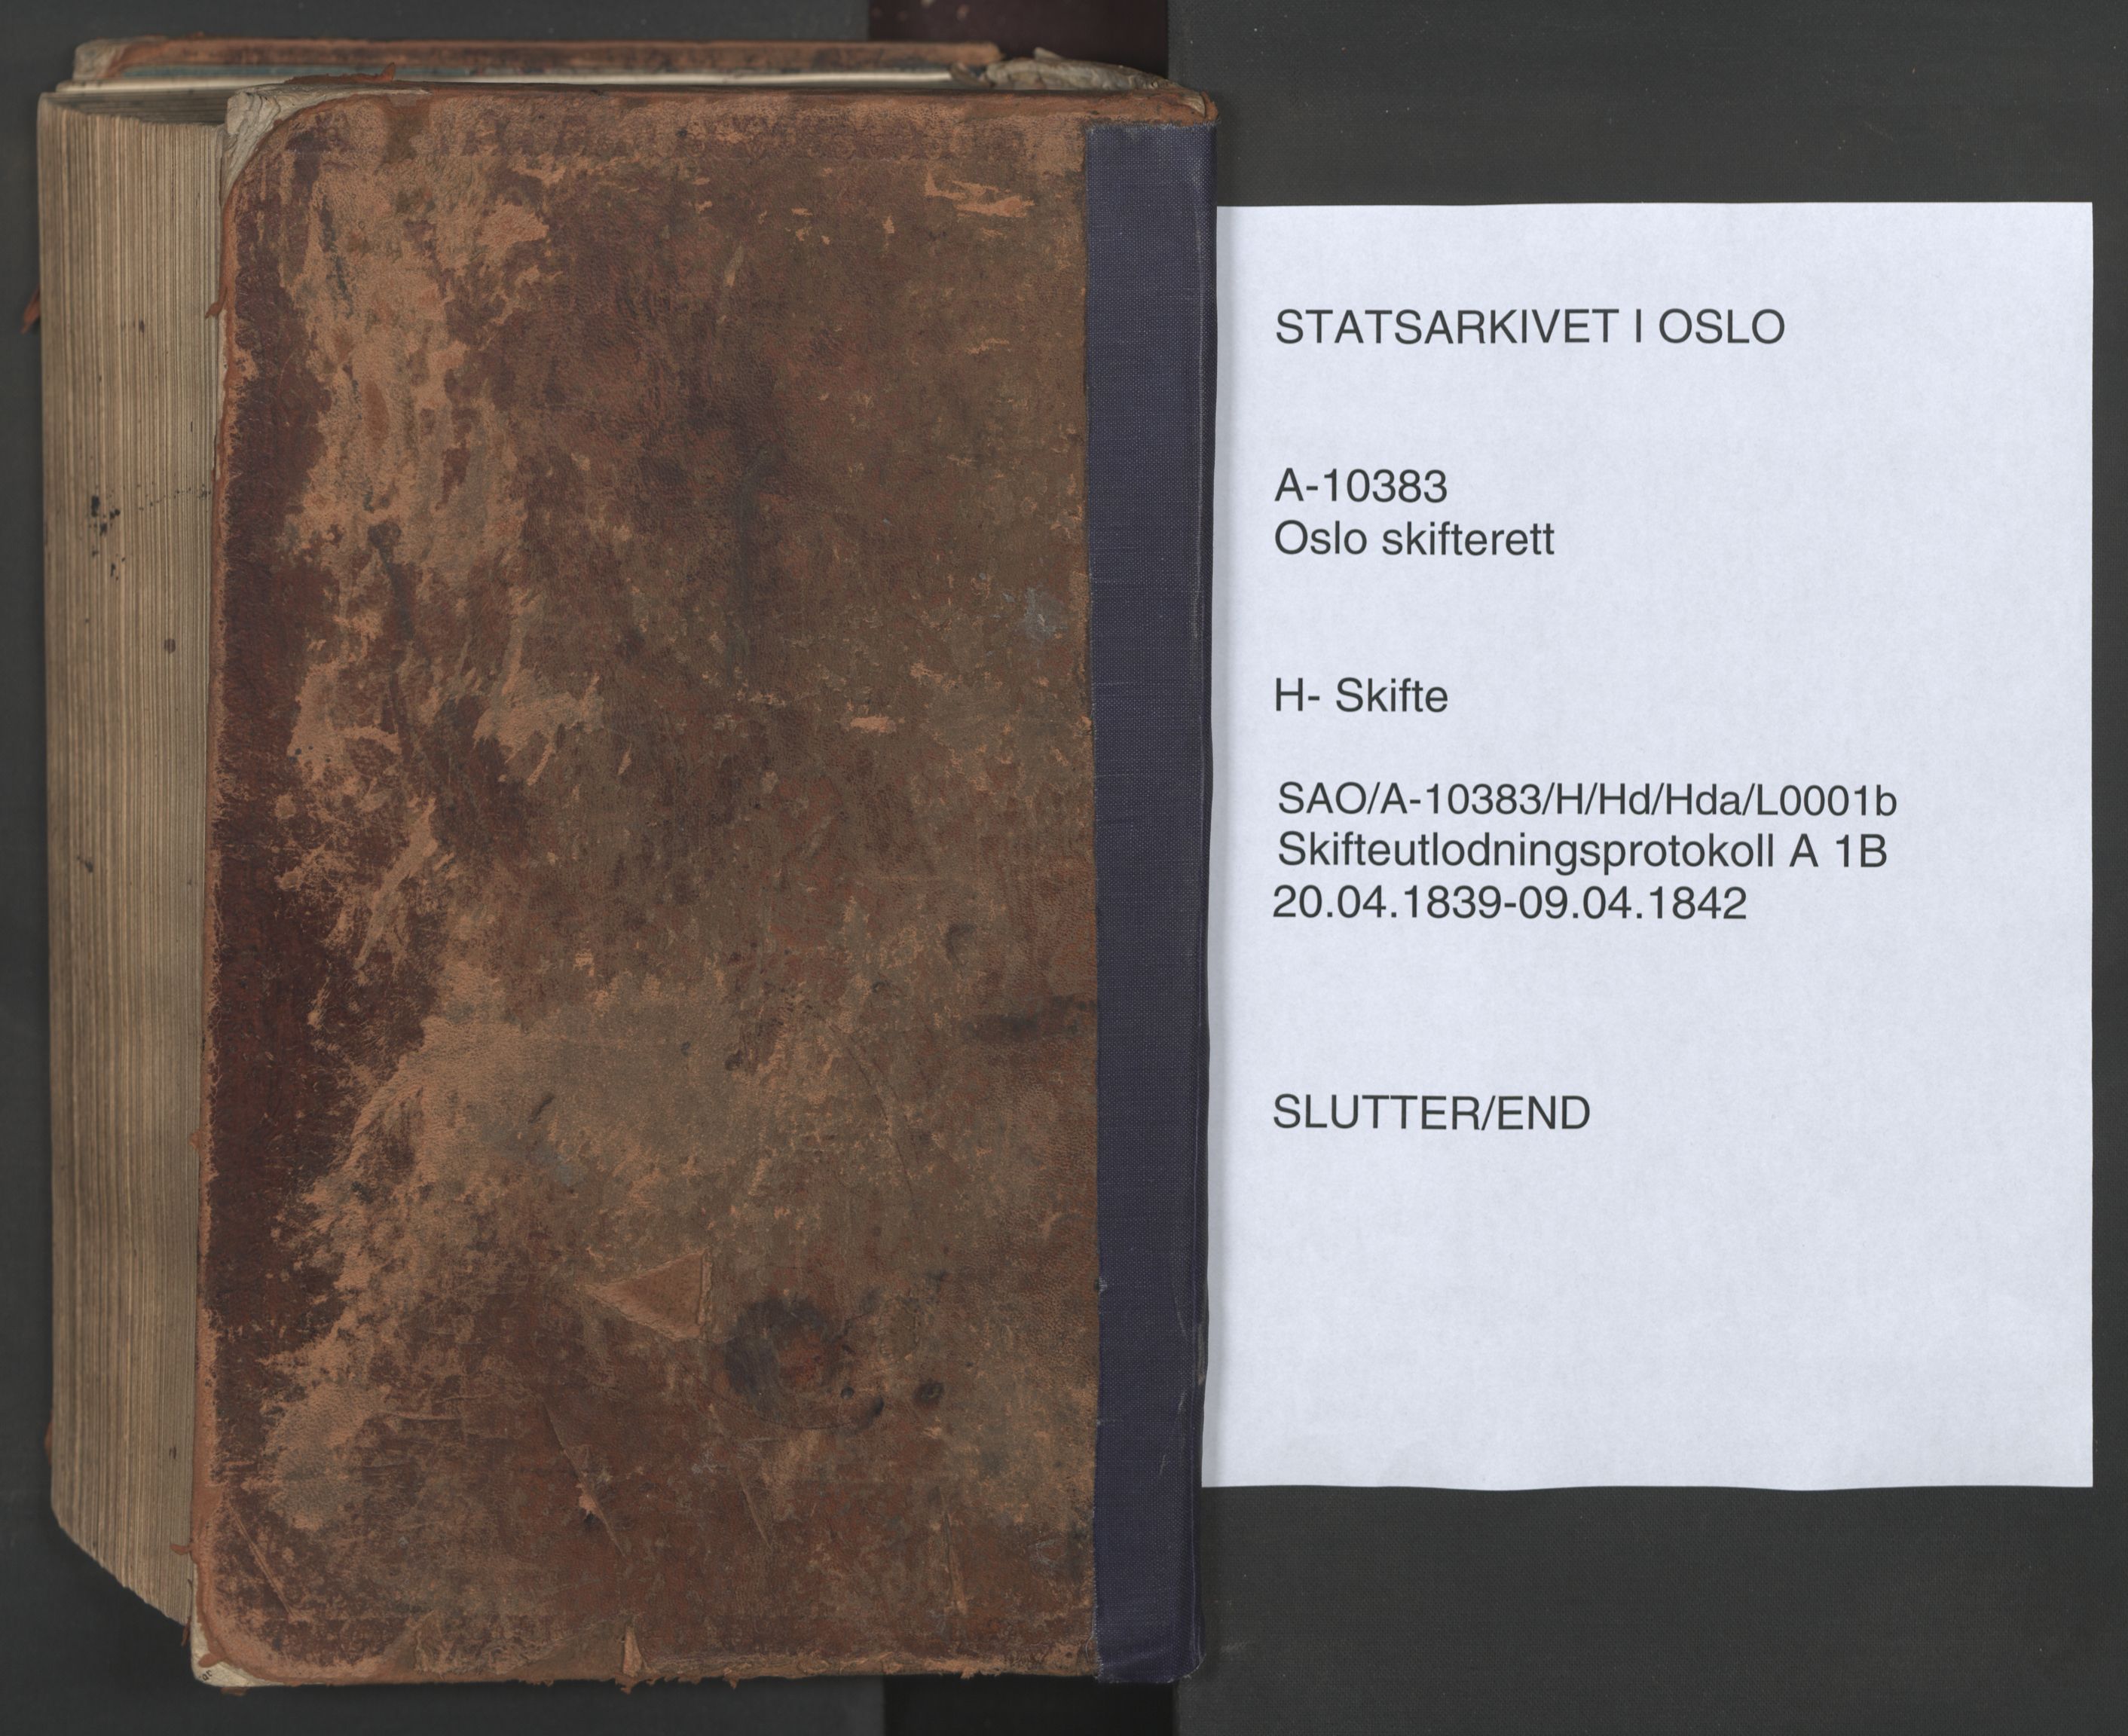 Oslo skifterett, SAO/A-10383/H/Hd/Hda/L0001b: Skifteutlodningsprotokoll, 1839-1842